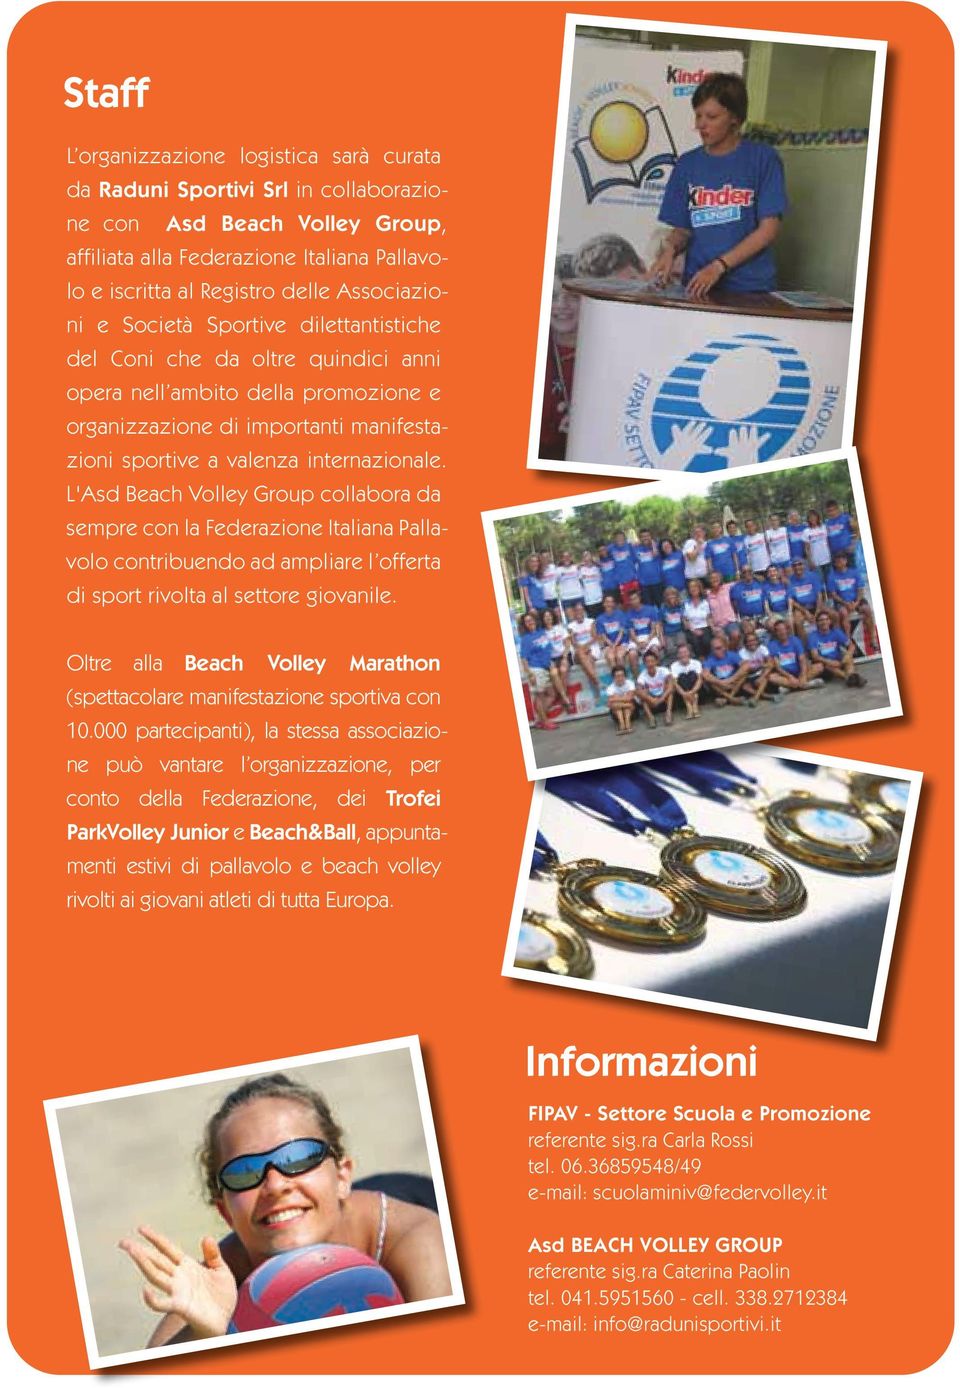 L'Asd Beach Volley Group collabora da sempre con la Federazione Italiana Pallavolo contribuendo ad ampliare l offerta di sport rivolta al settore giovanile.